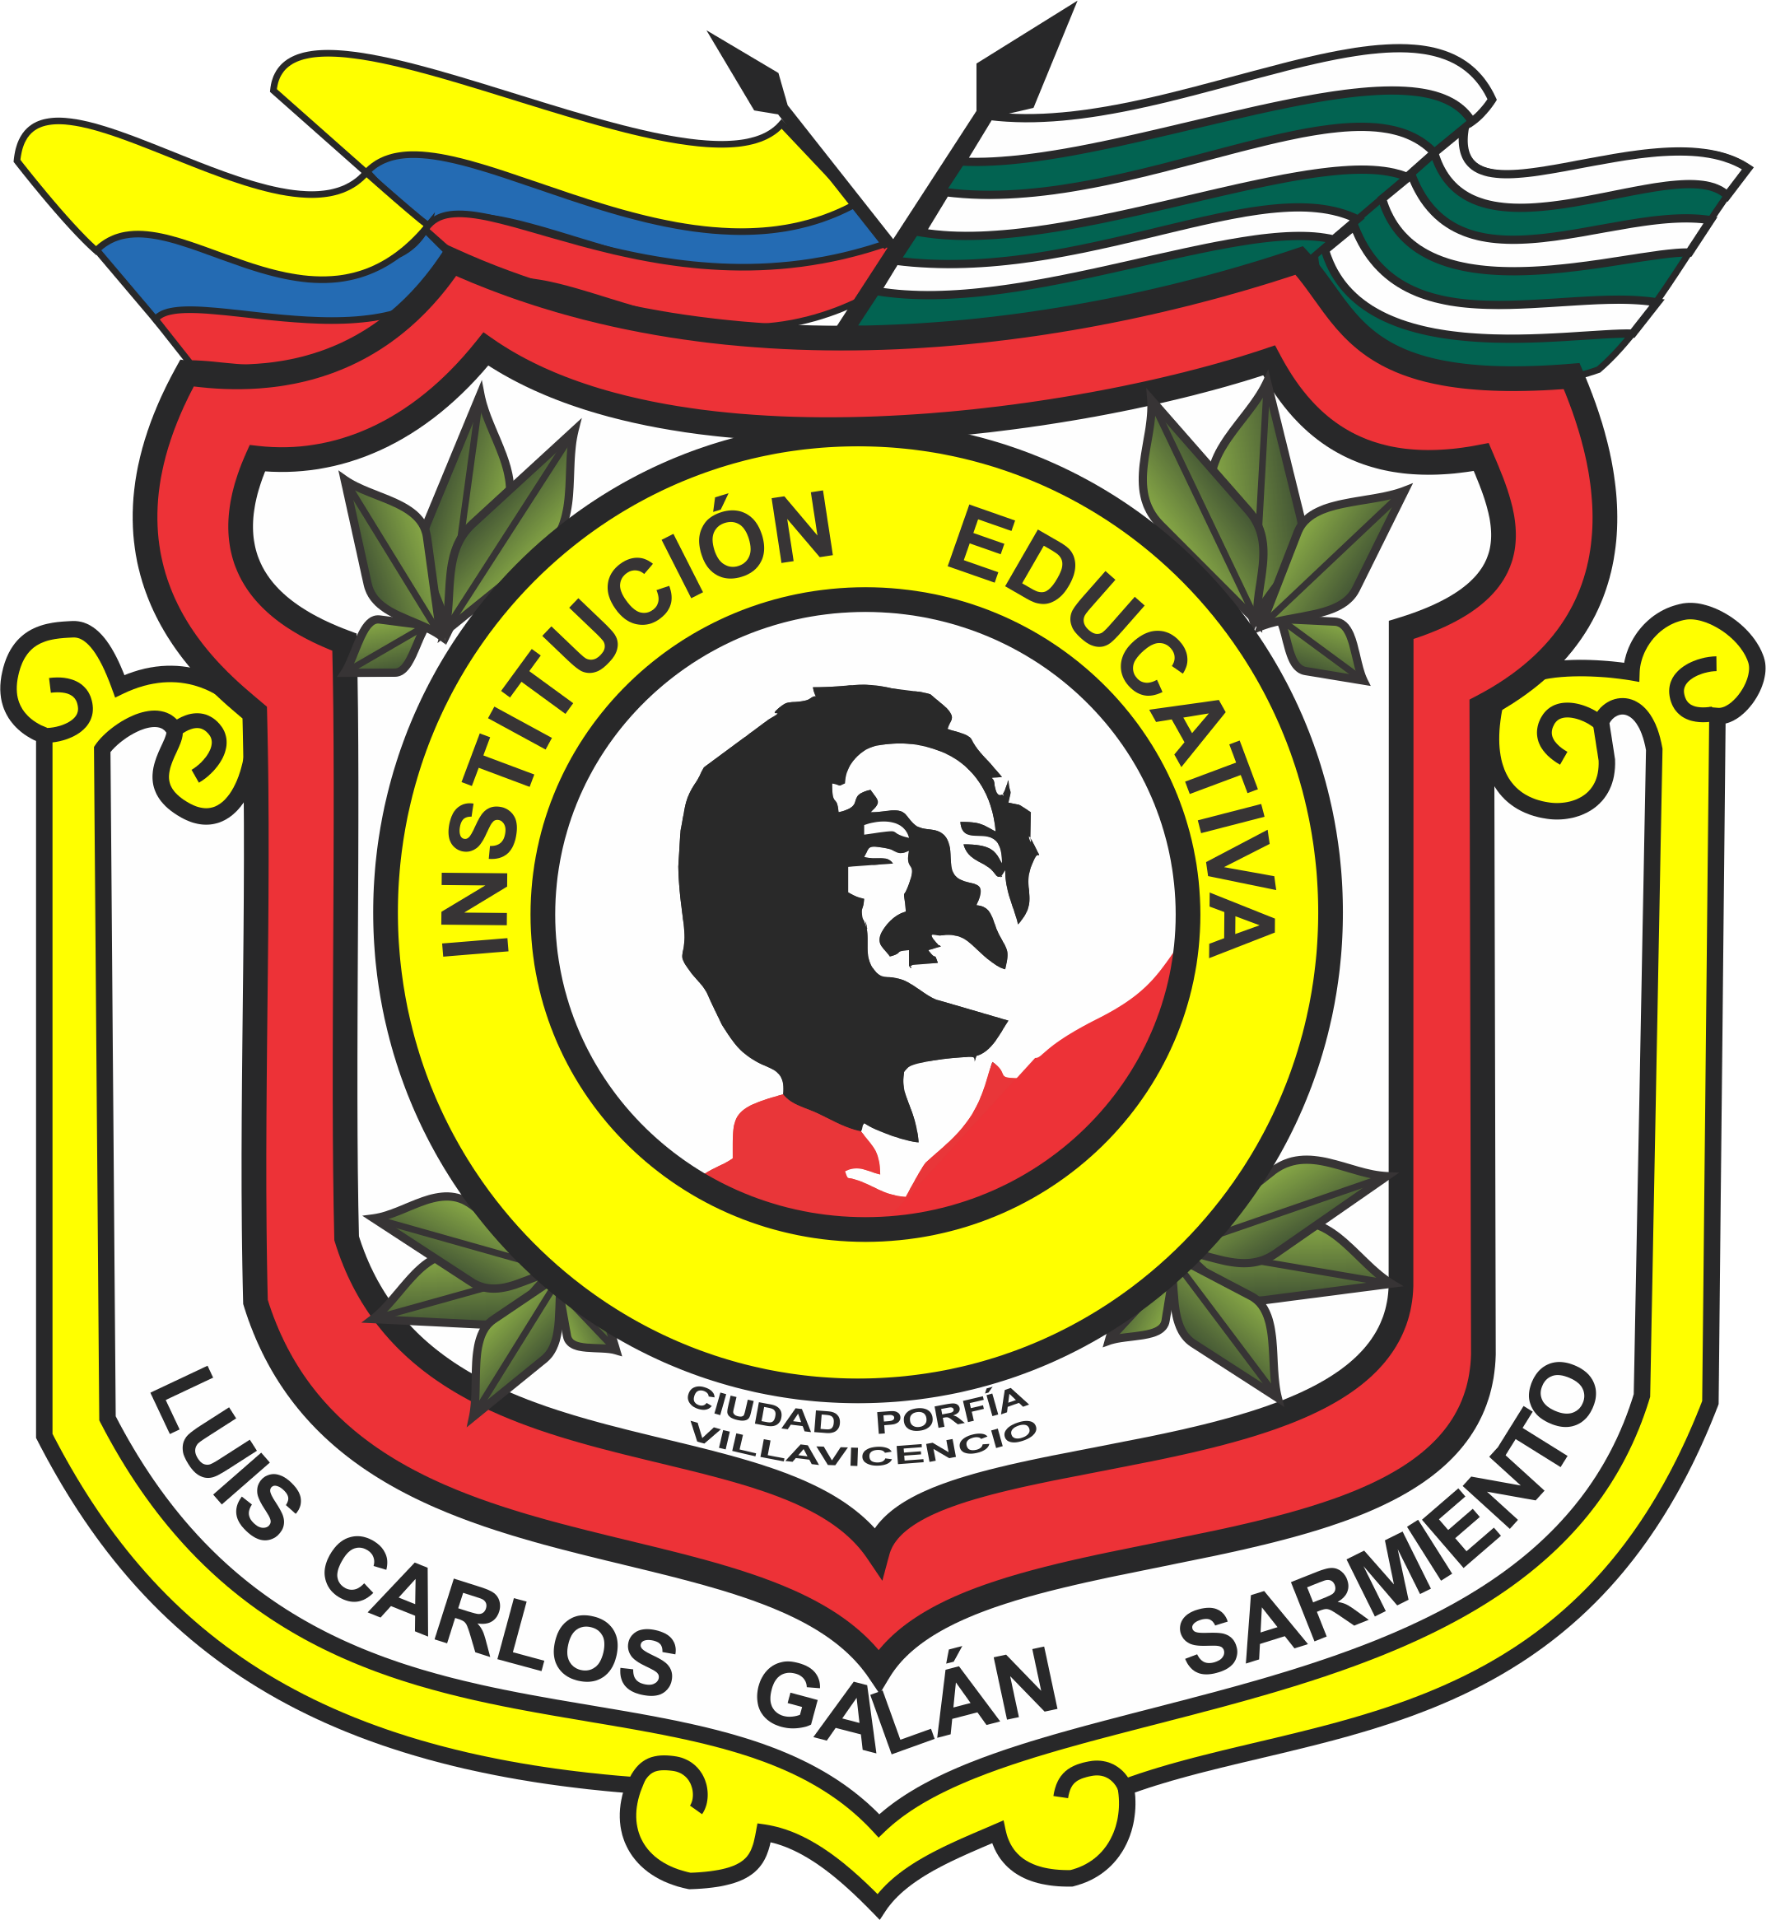 Institución Educativa Luis Carlos Galán Villavicencio